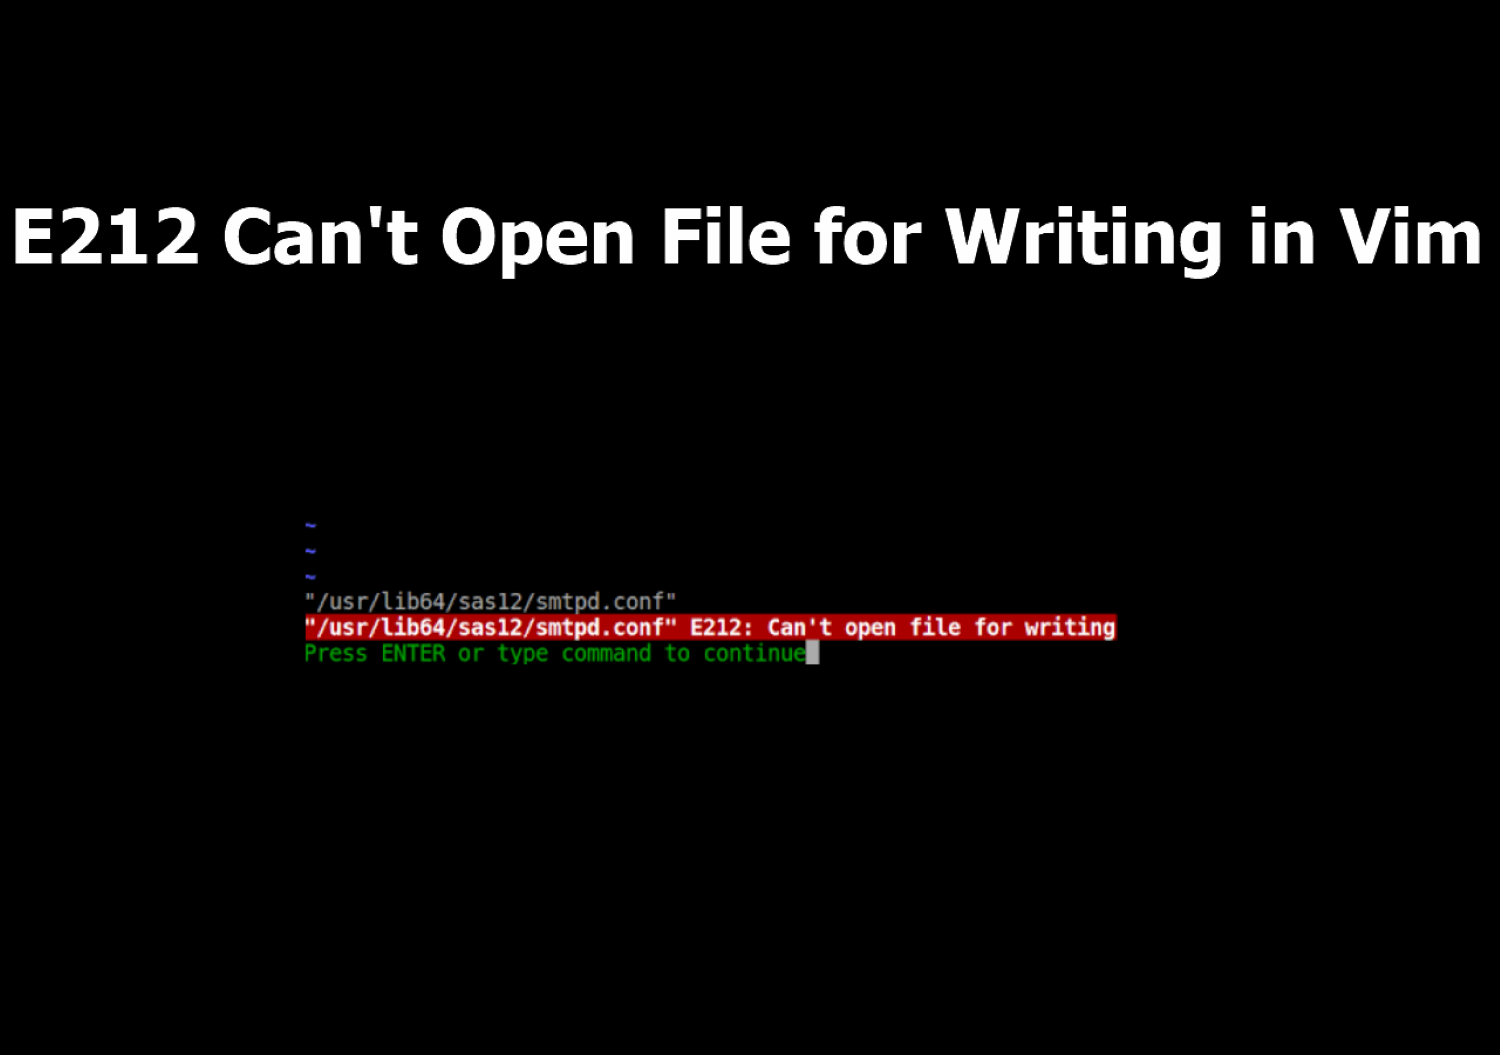 e212 can't open file